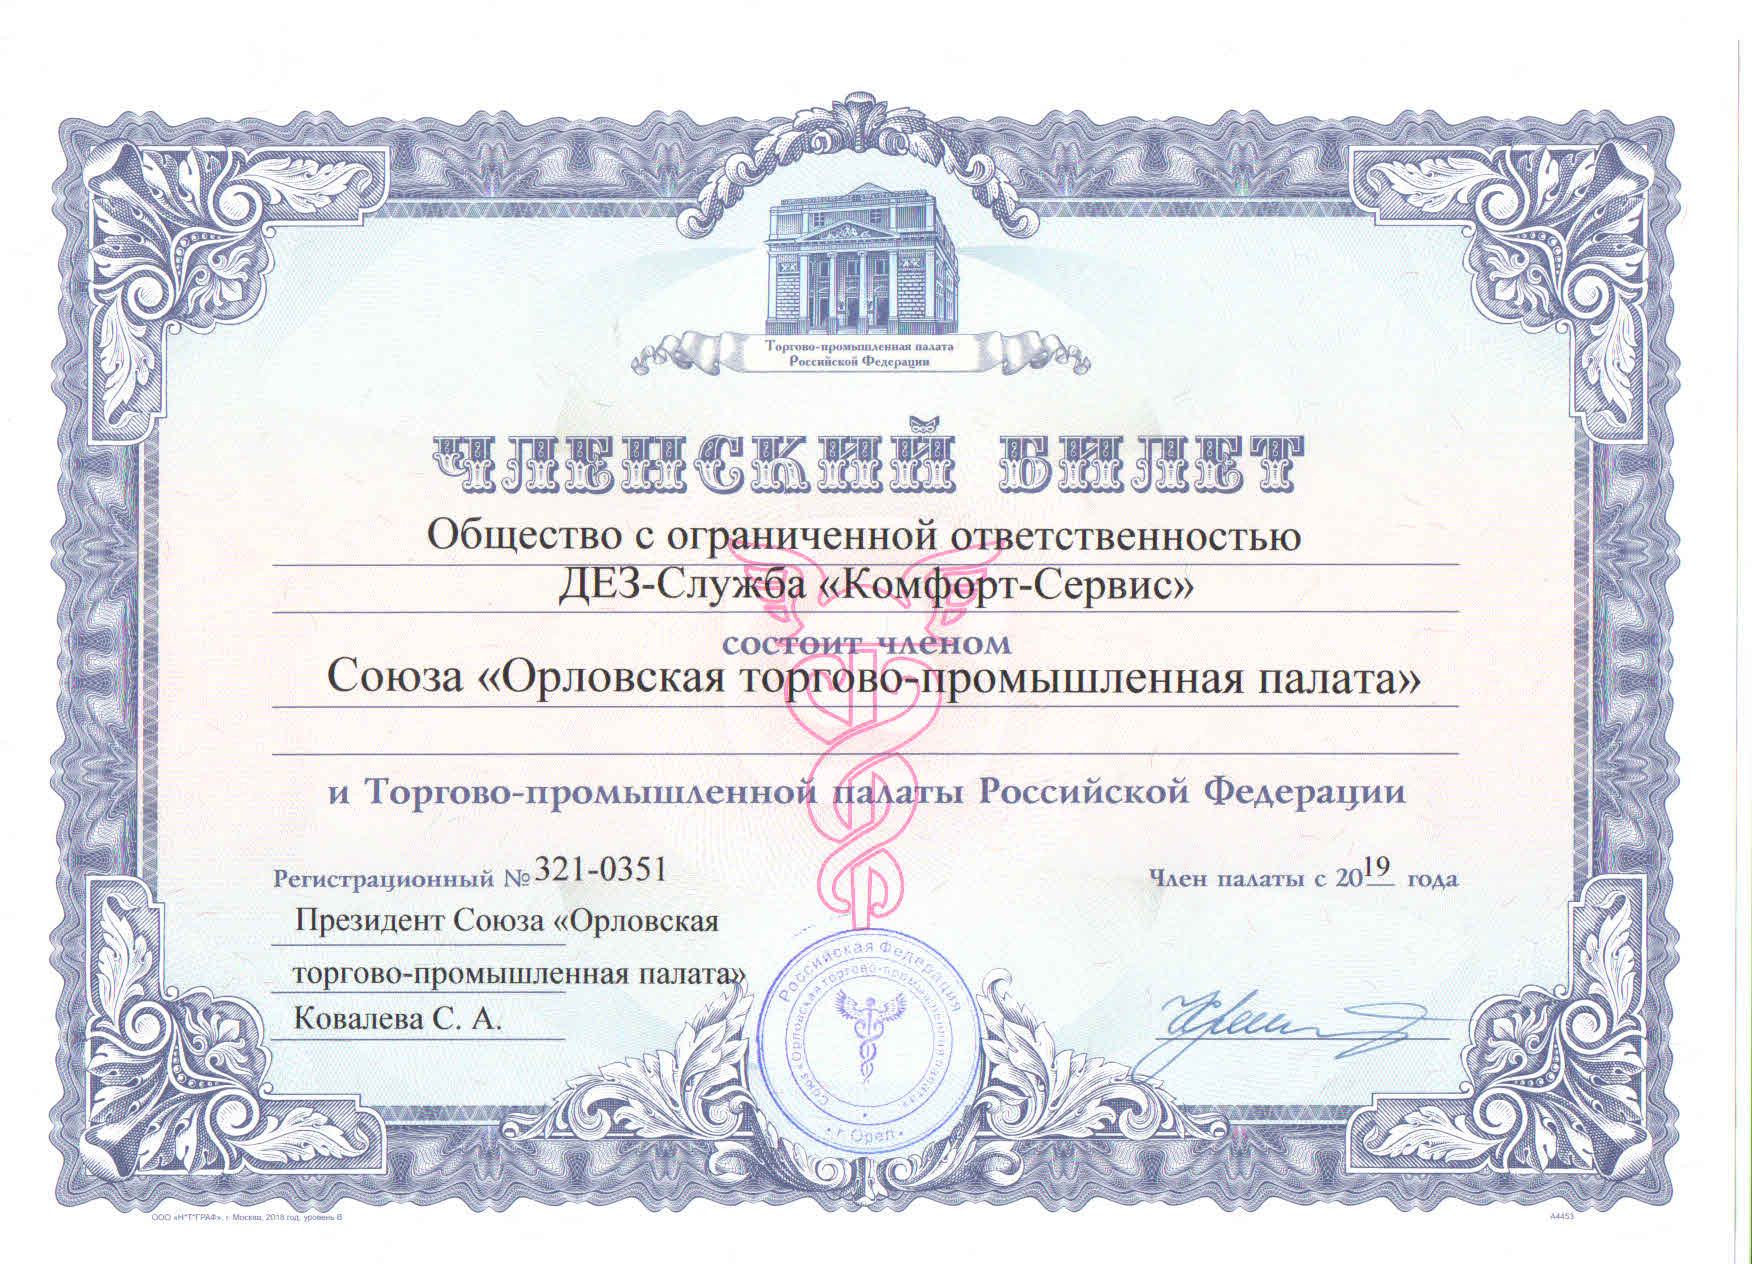 Членский билет союза "Орловская торгово-промышленная палата"